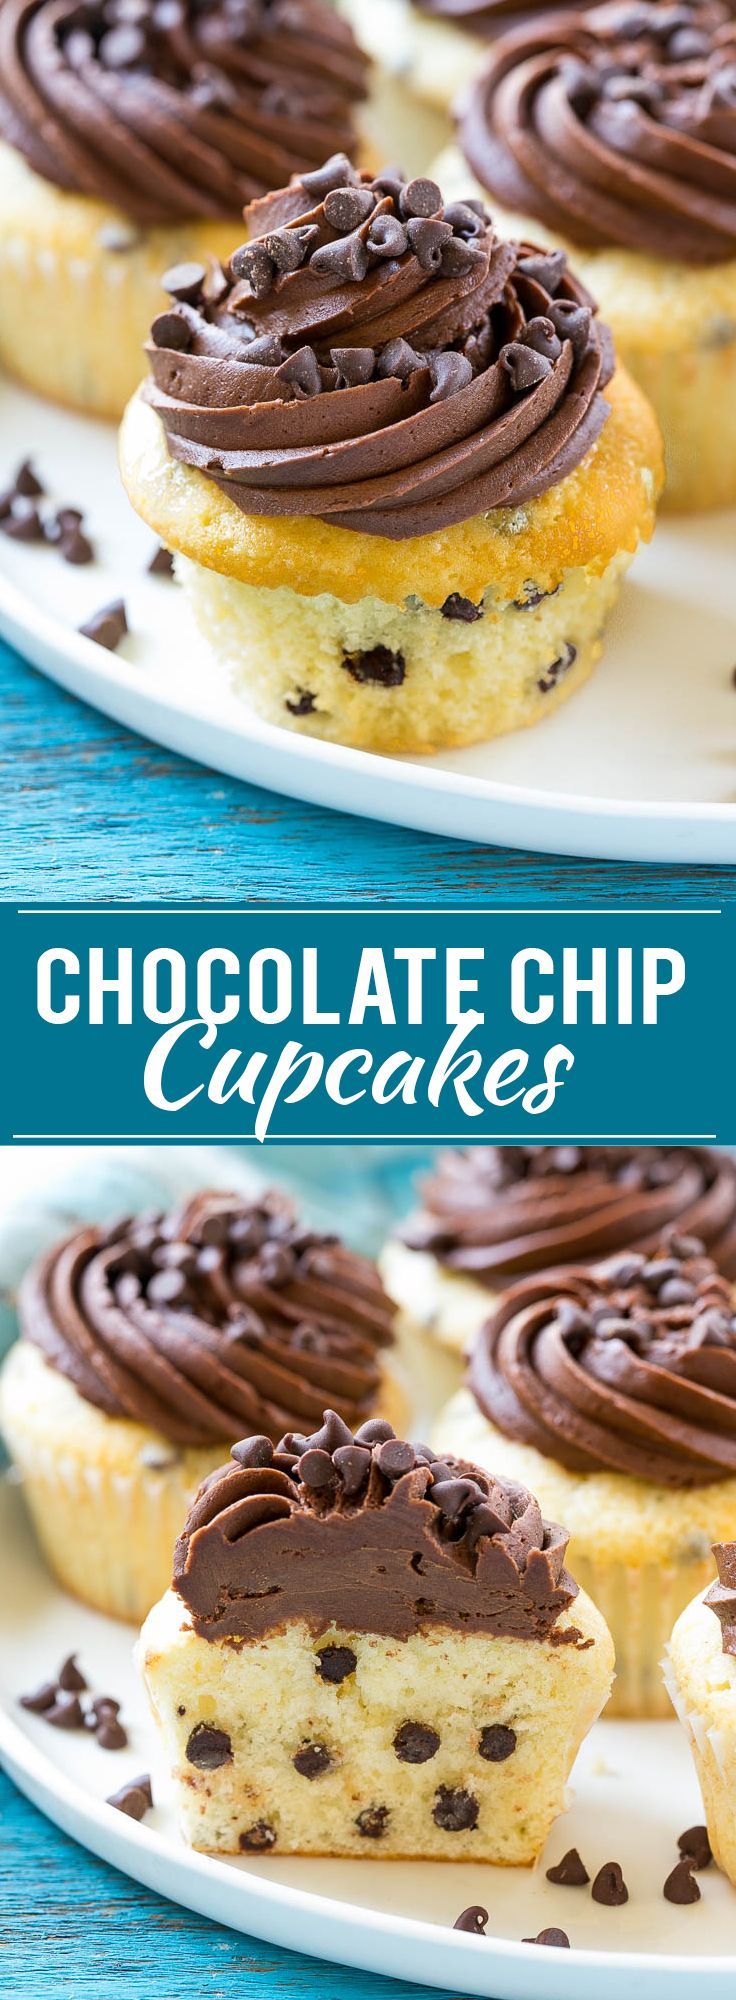 Chocolate Chip Cupcakes Recipe | Cupcake Recipe | Chocolate Chips | Chocolate Frosting | Easy Cupcake Recipe